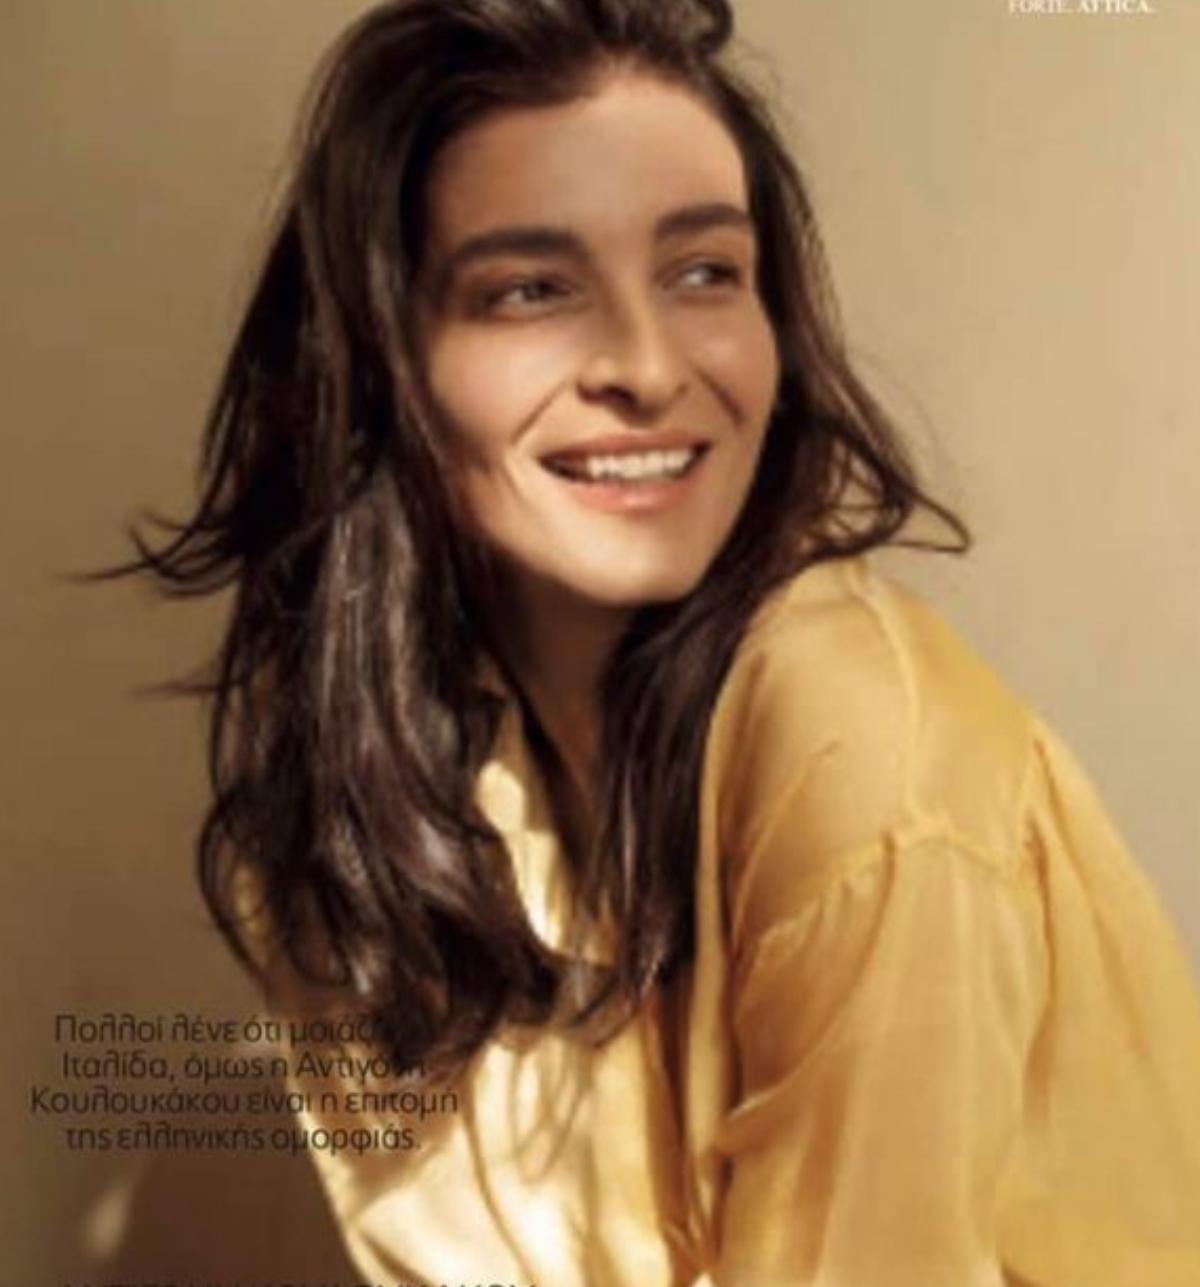 Όταν η Ιουλία απο την Γη της ελιάς ήταν μοντέλο και φωτογραφιζόταν για την για την ιταλική «Vogue»